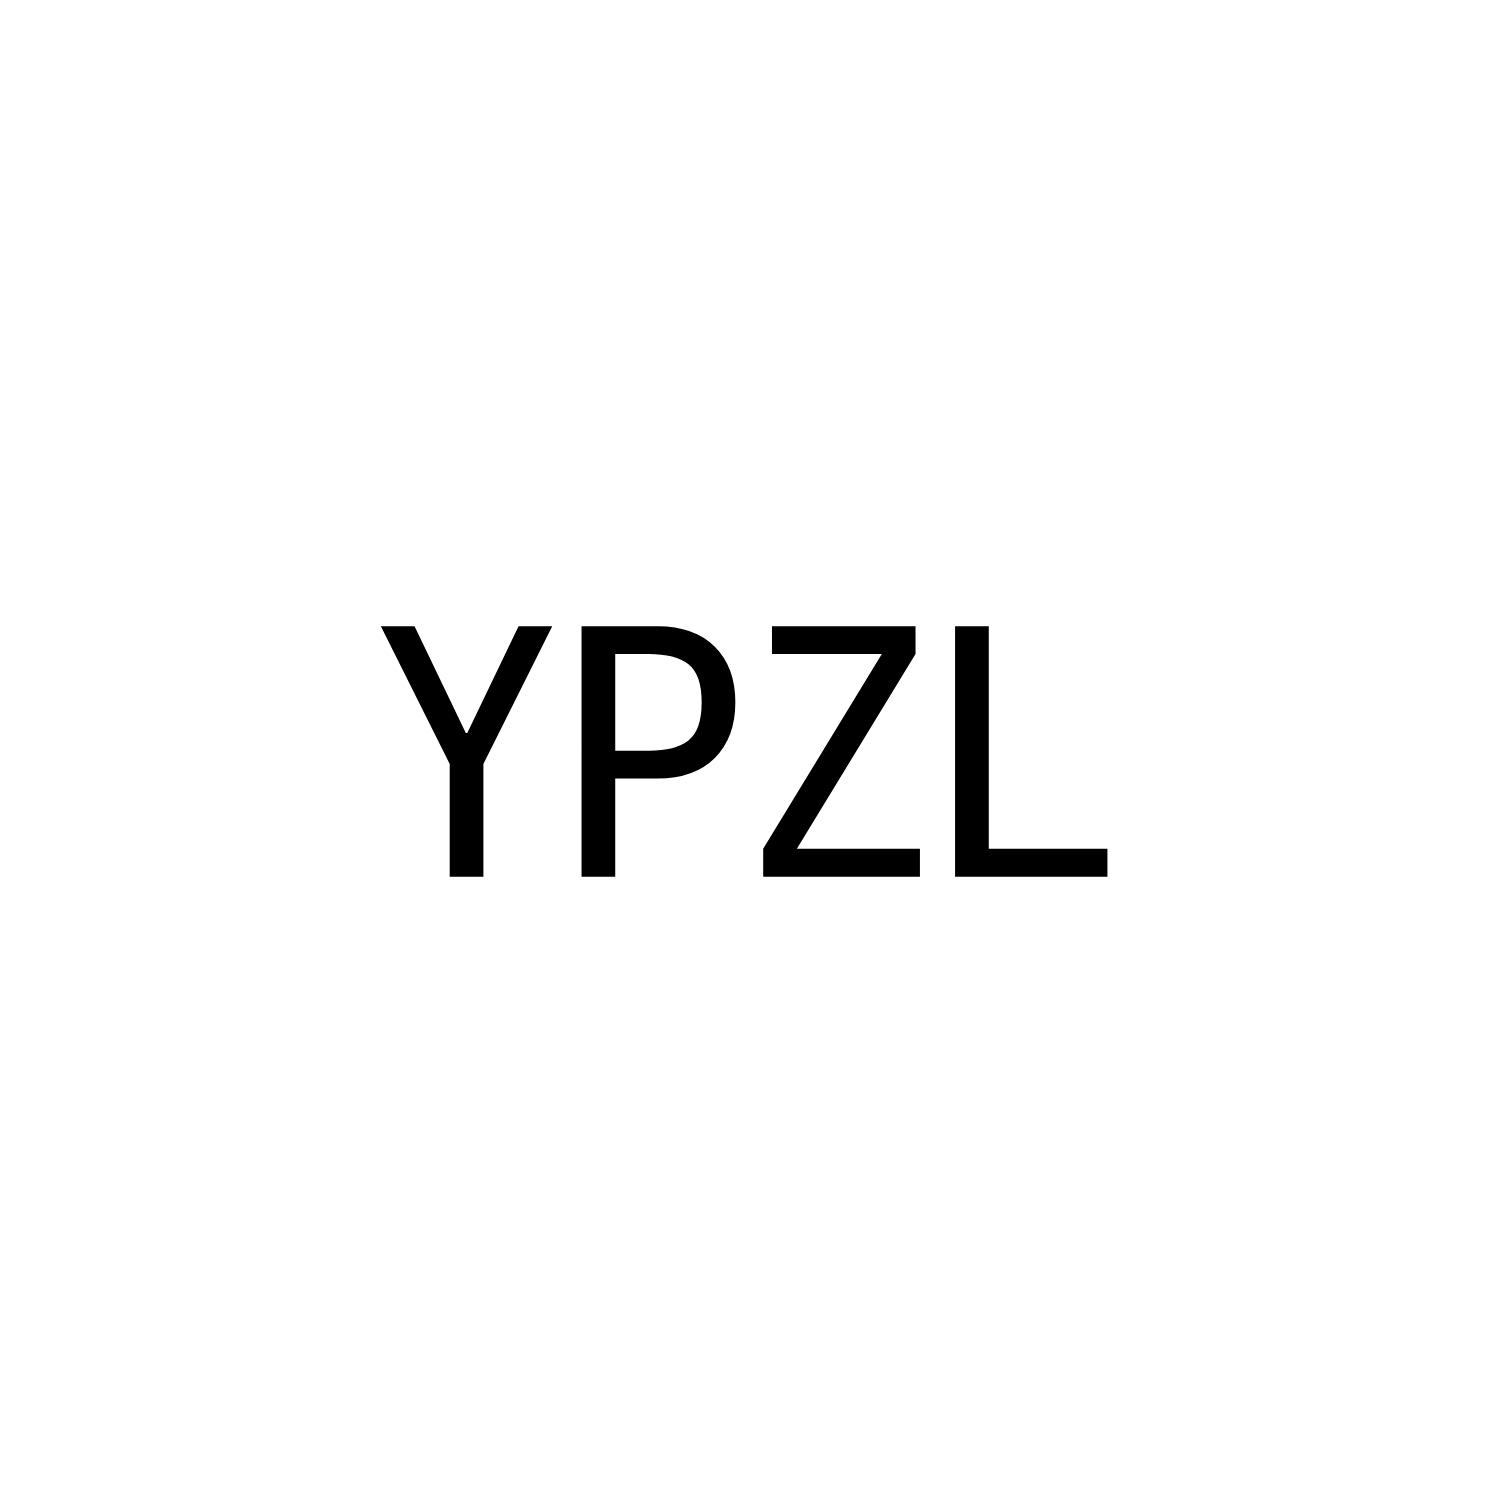 YPZL